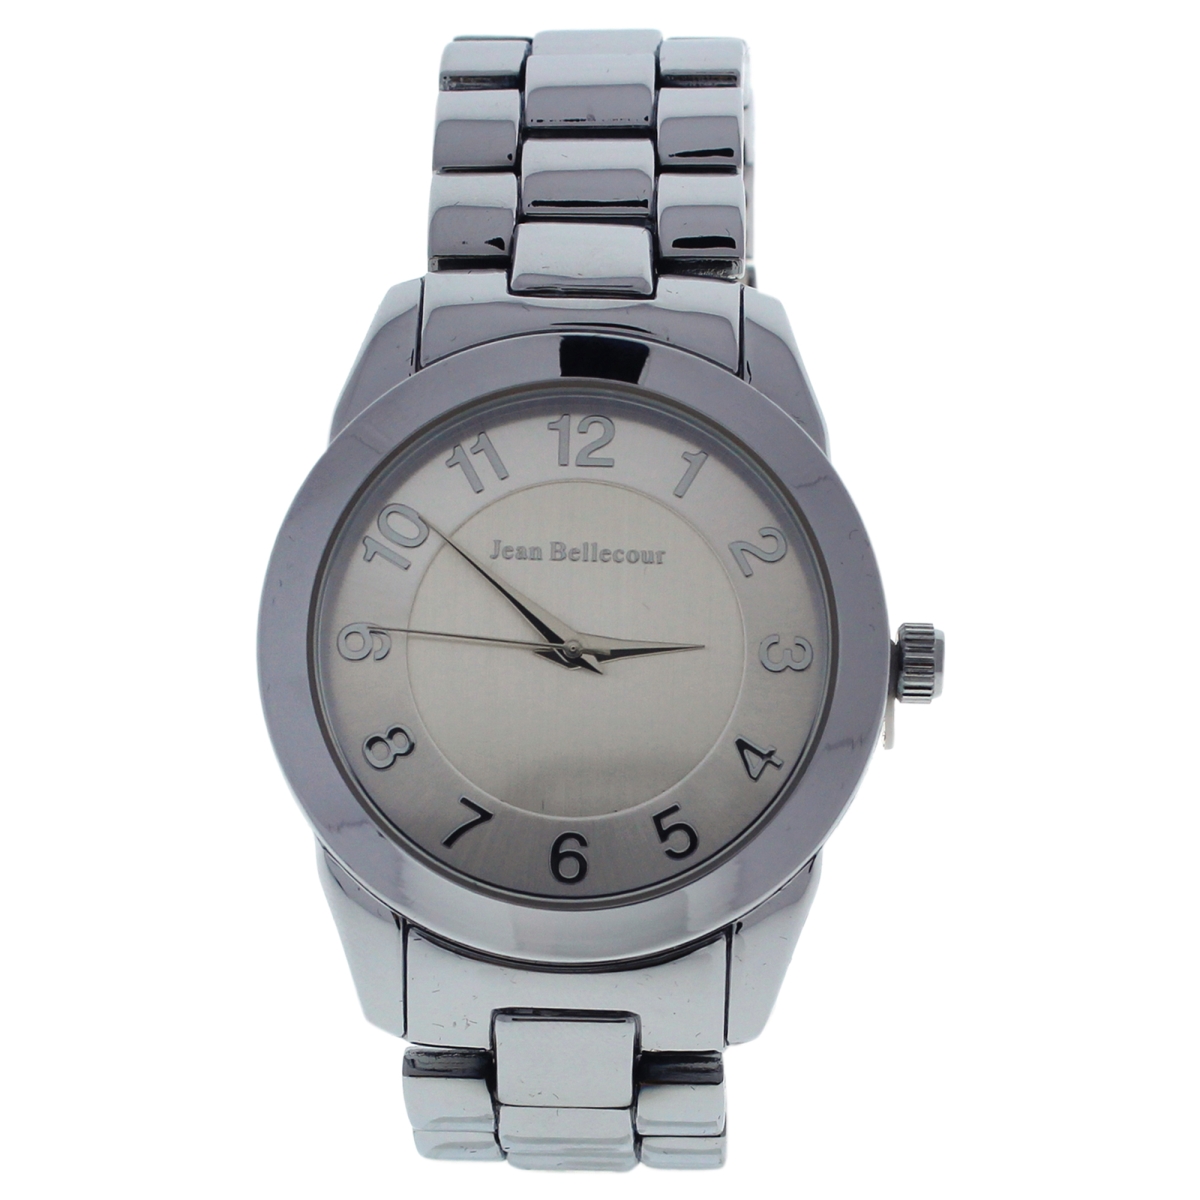 Picture of Jean Bellecour W-WAT-1478 Silver Stainless Steel Bracelet Watch for Women - A0372-5